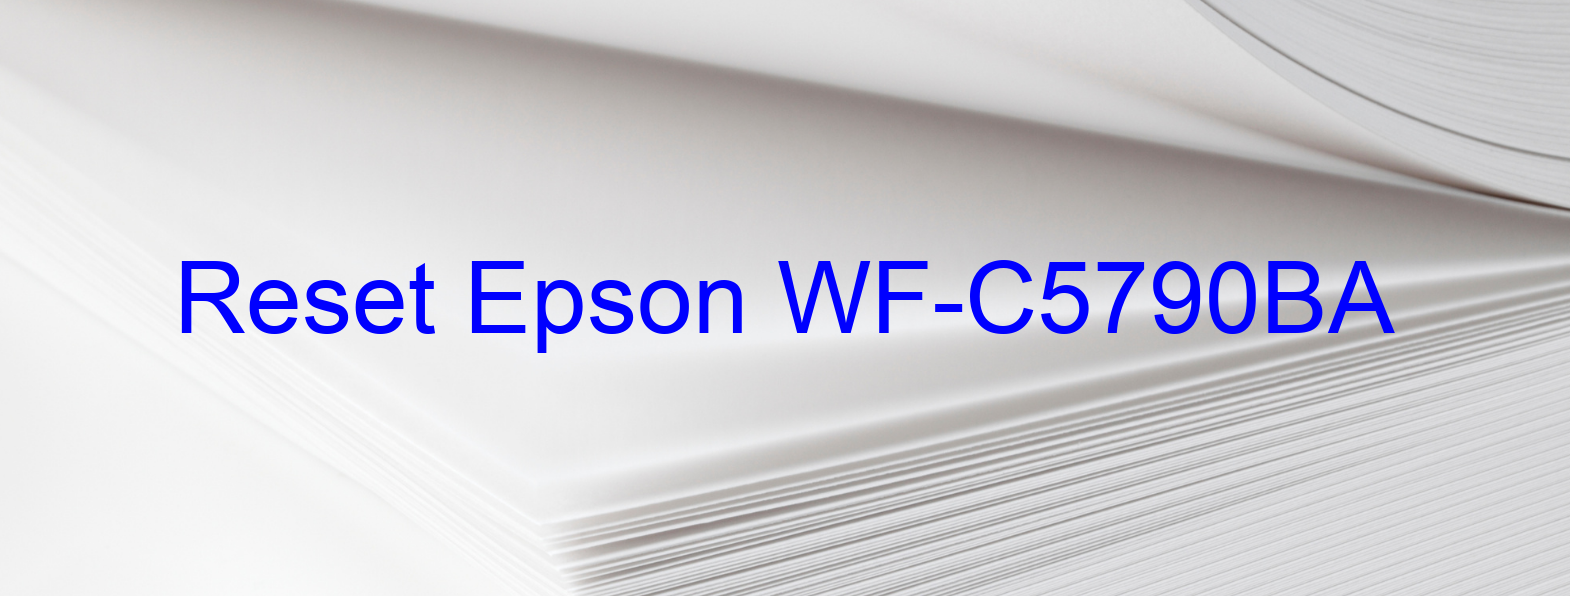 reset Epson WF-C5790BA